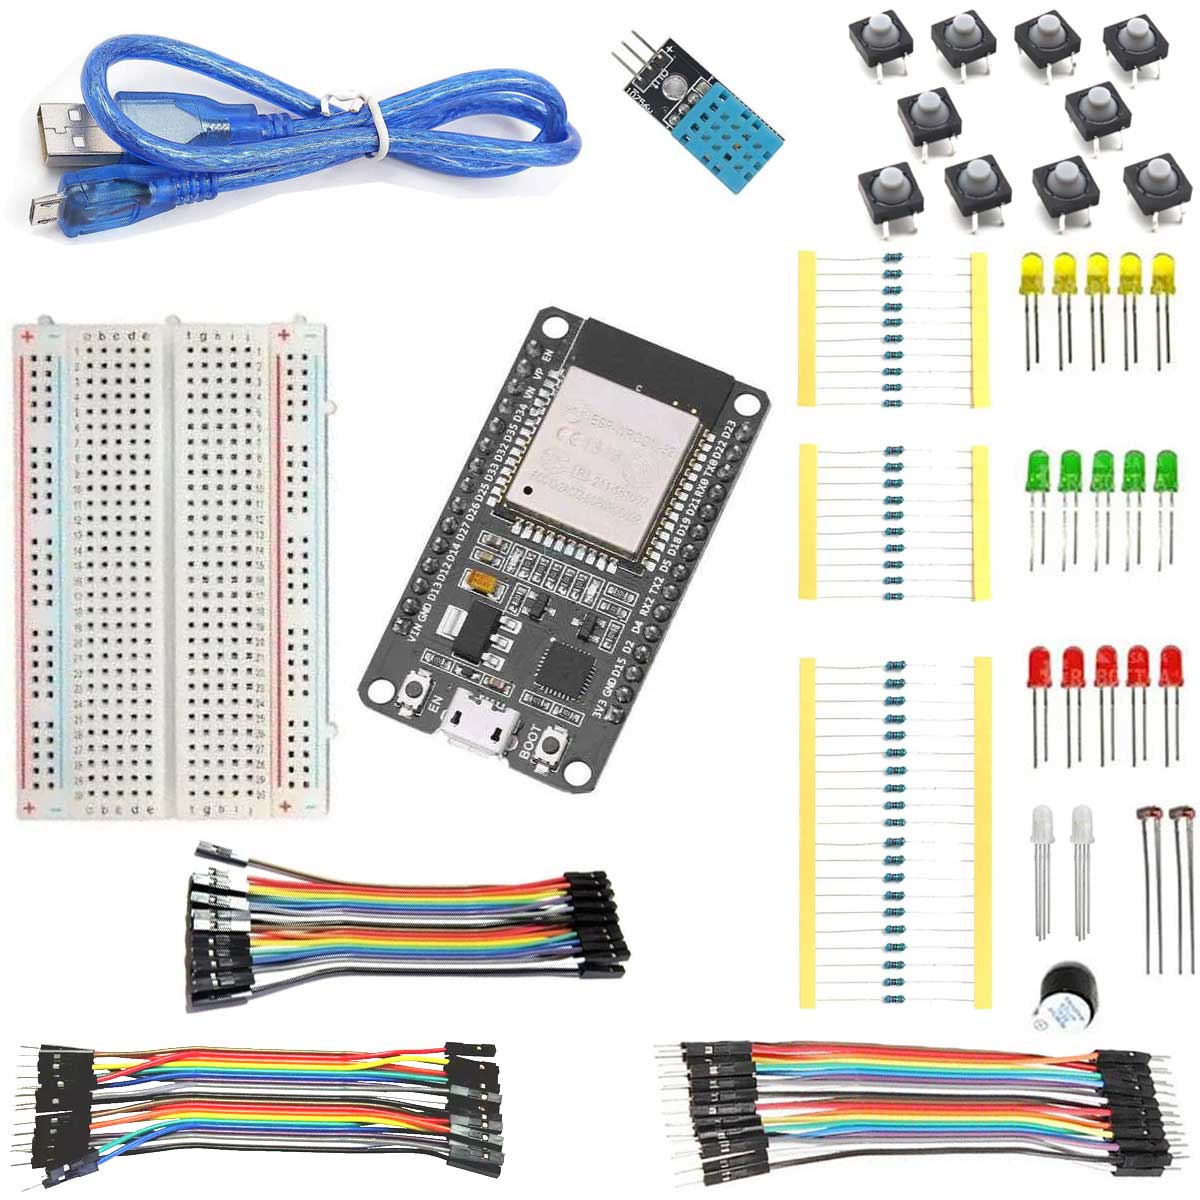 Kit ESP32 + Cabo + Protoboard + Resistores + Leds + Botões + Cabos Jumpers